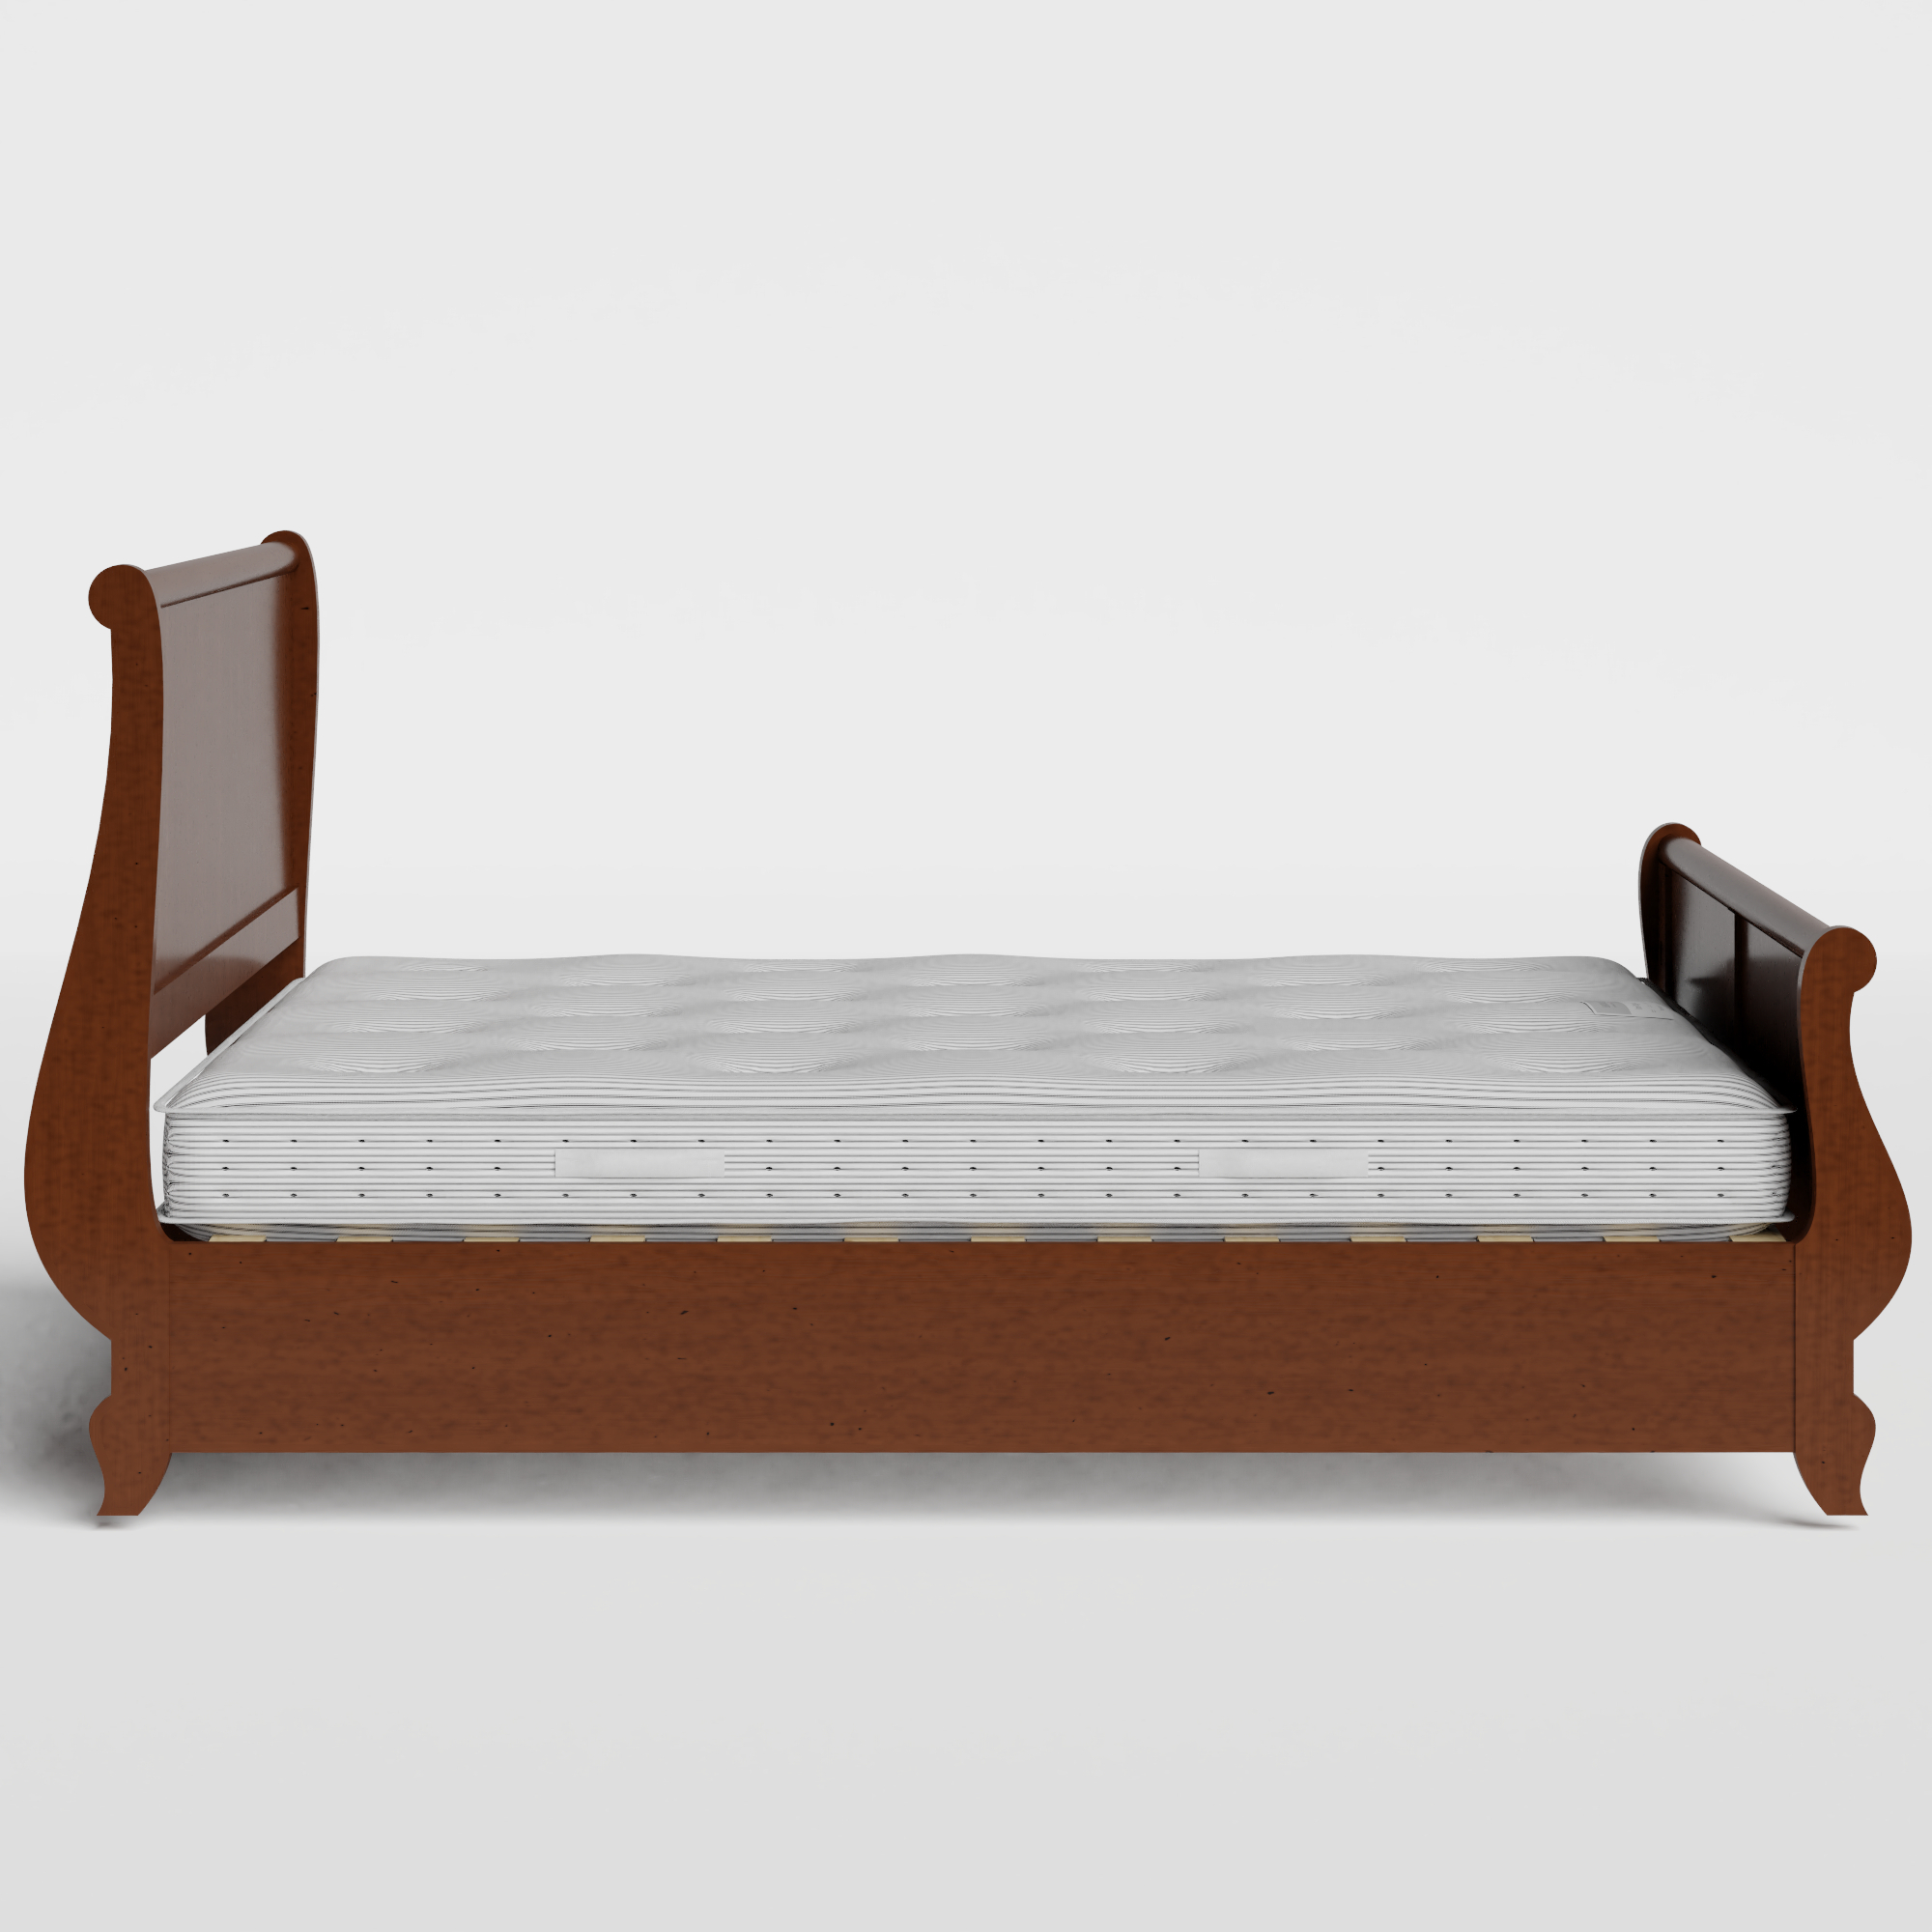 Elliot wood bed in dark cherry with Juno mattress